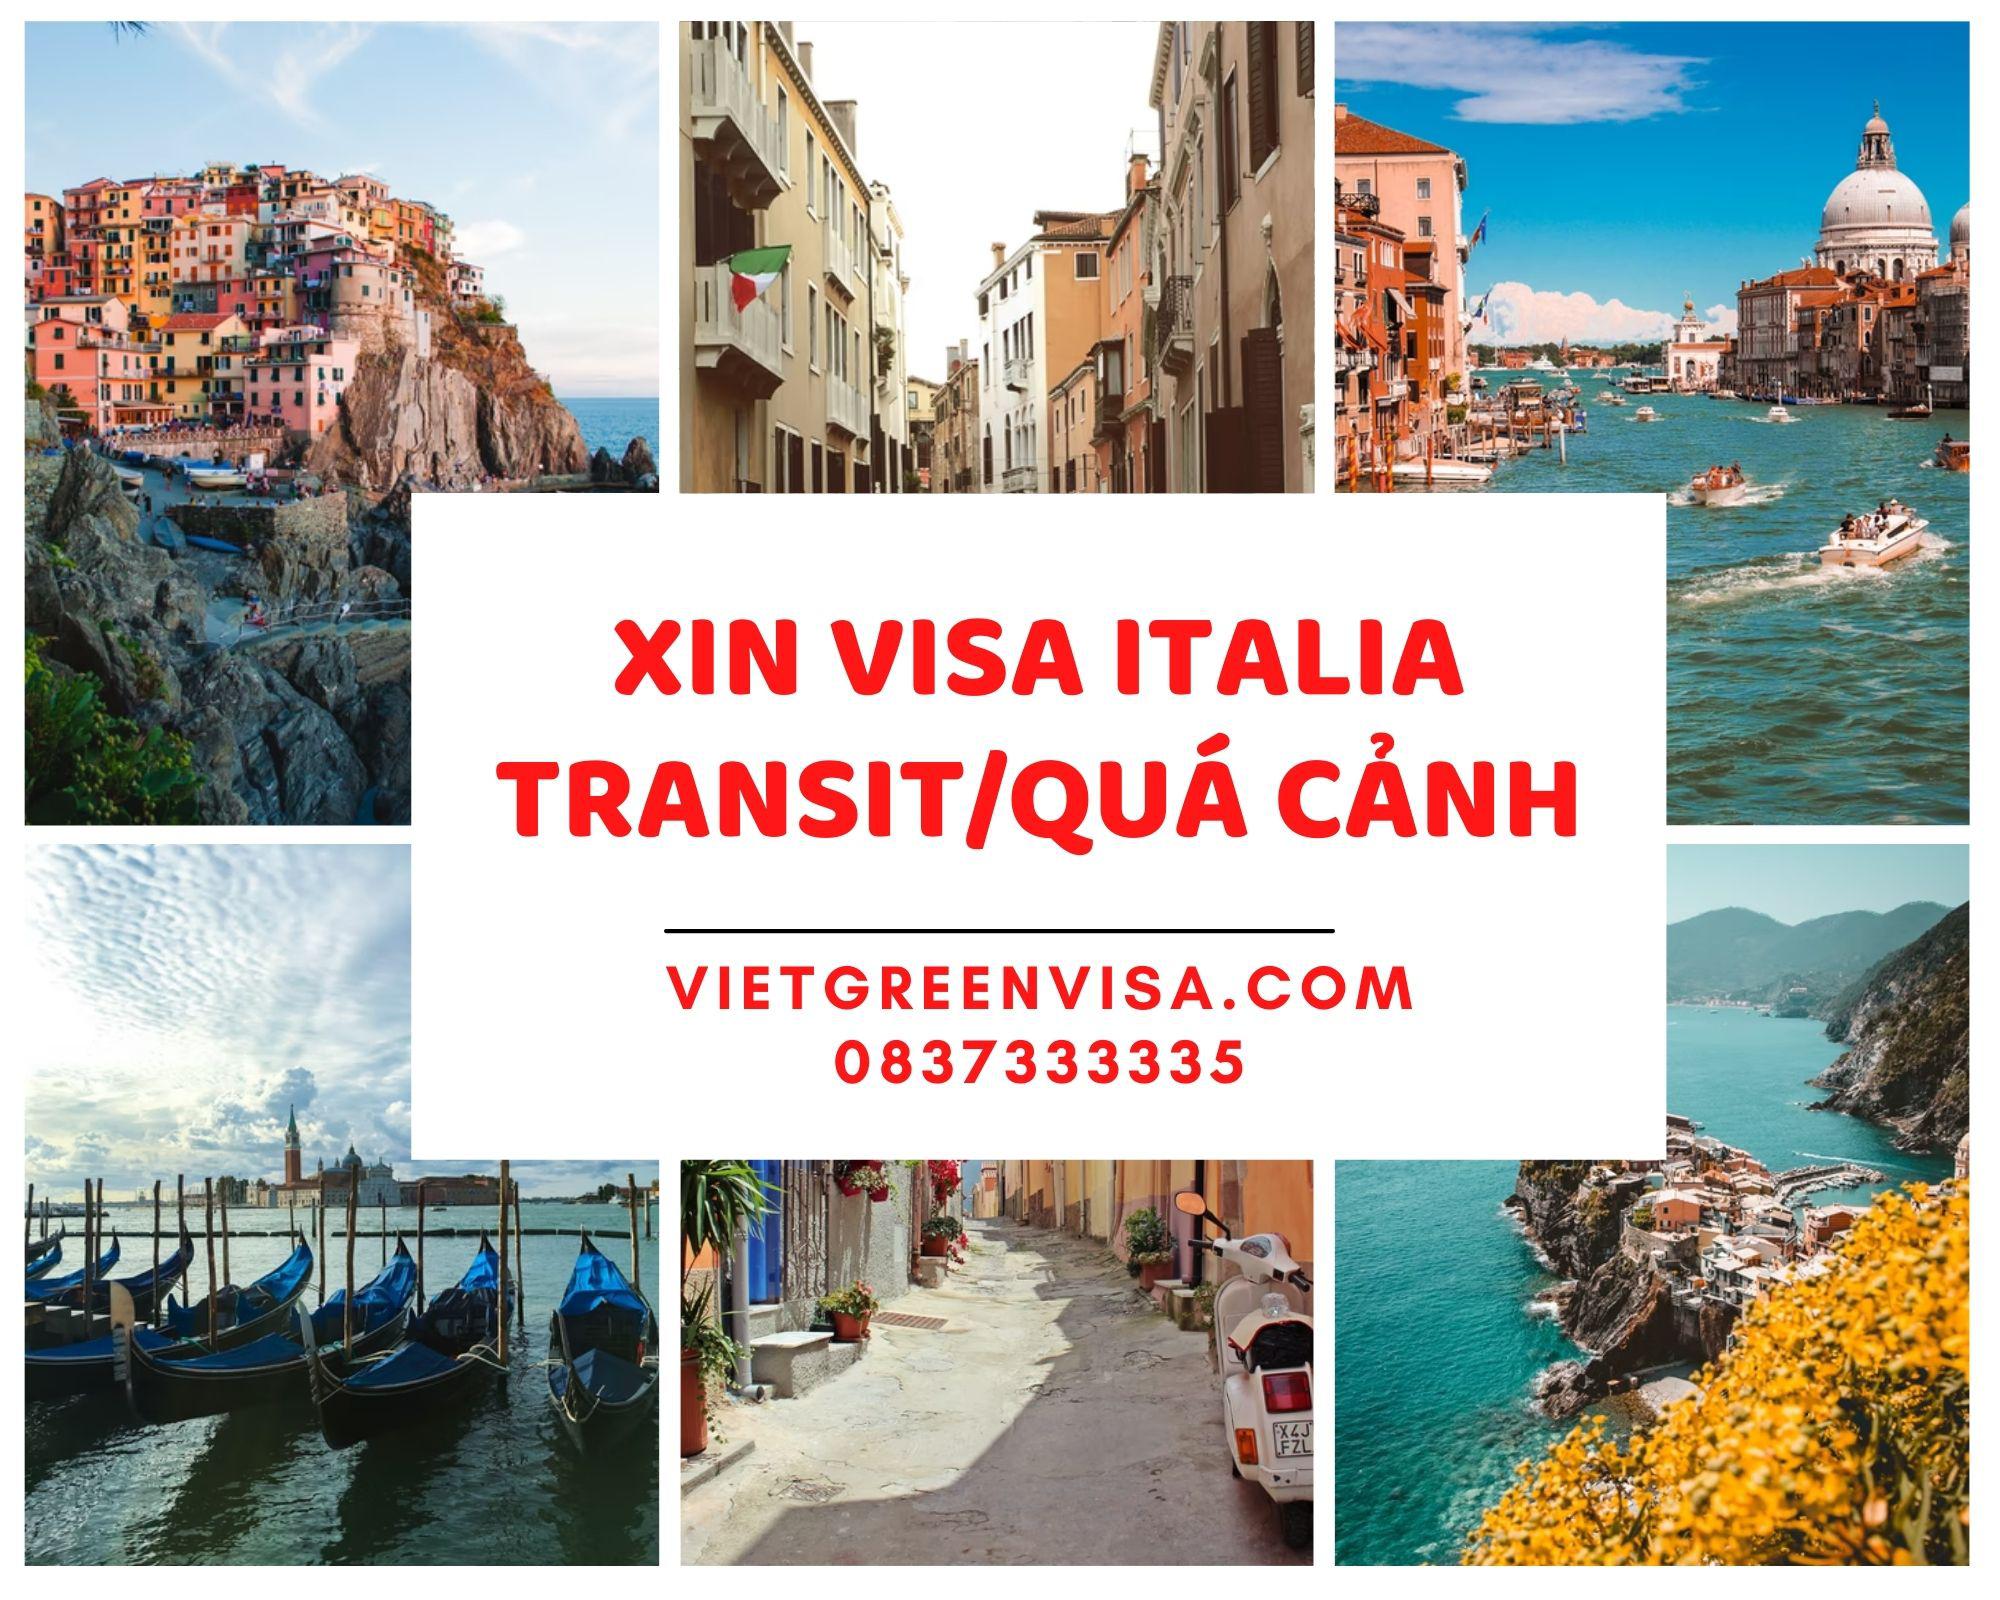 Xin visa quá cảnh qua Italy, visa Italia transit uy tín